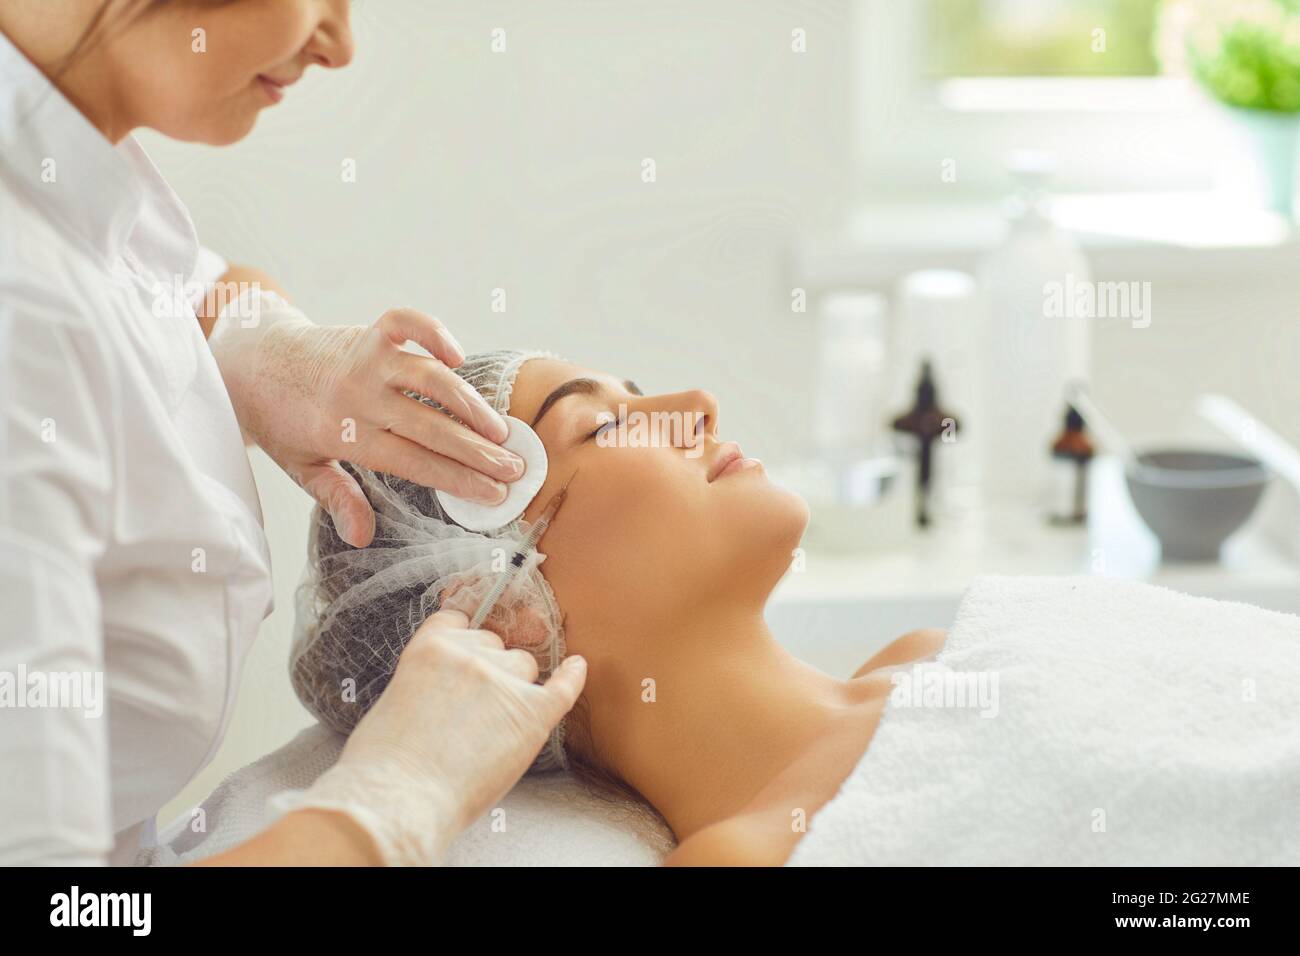 Donna sorridente che ottiene bellezza anti-invecchiamento iniezione della pelle a guancia da dermatologist professionale Foto Stock